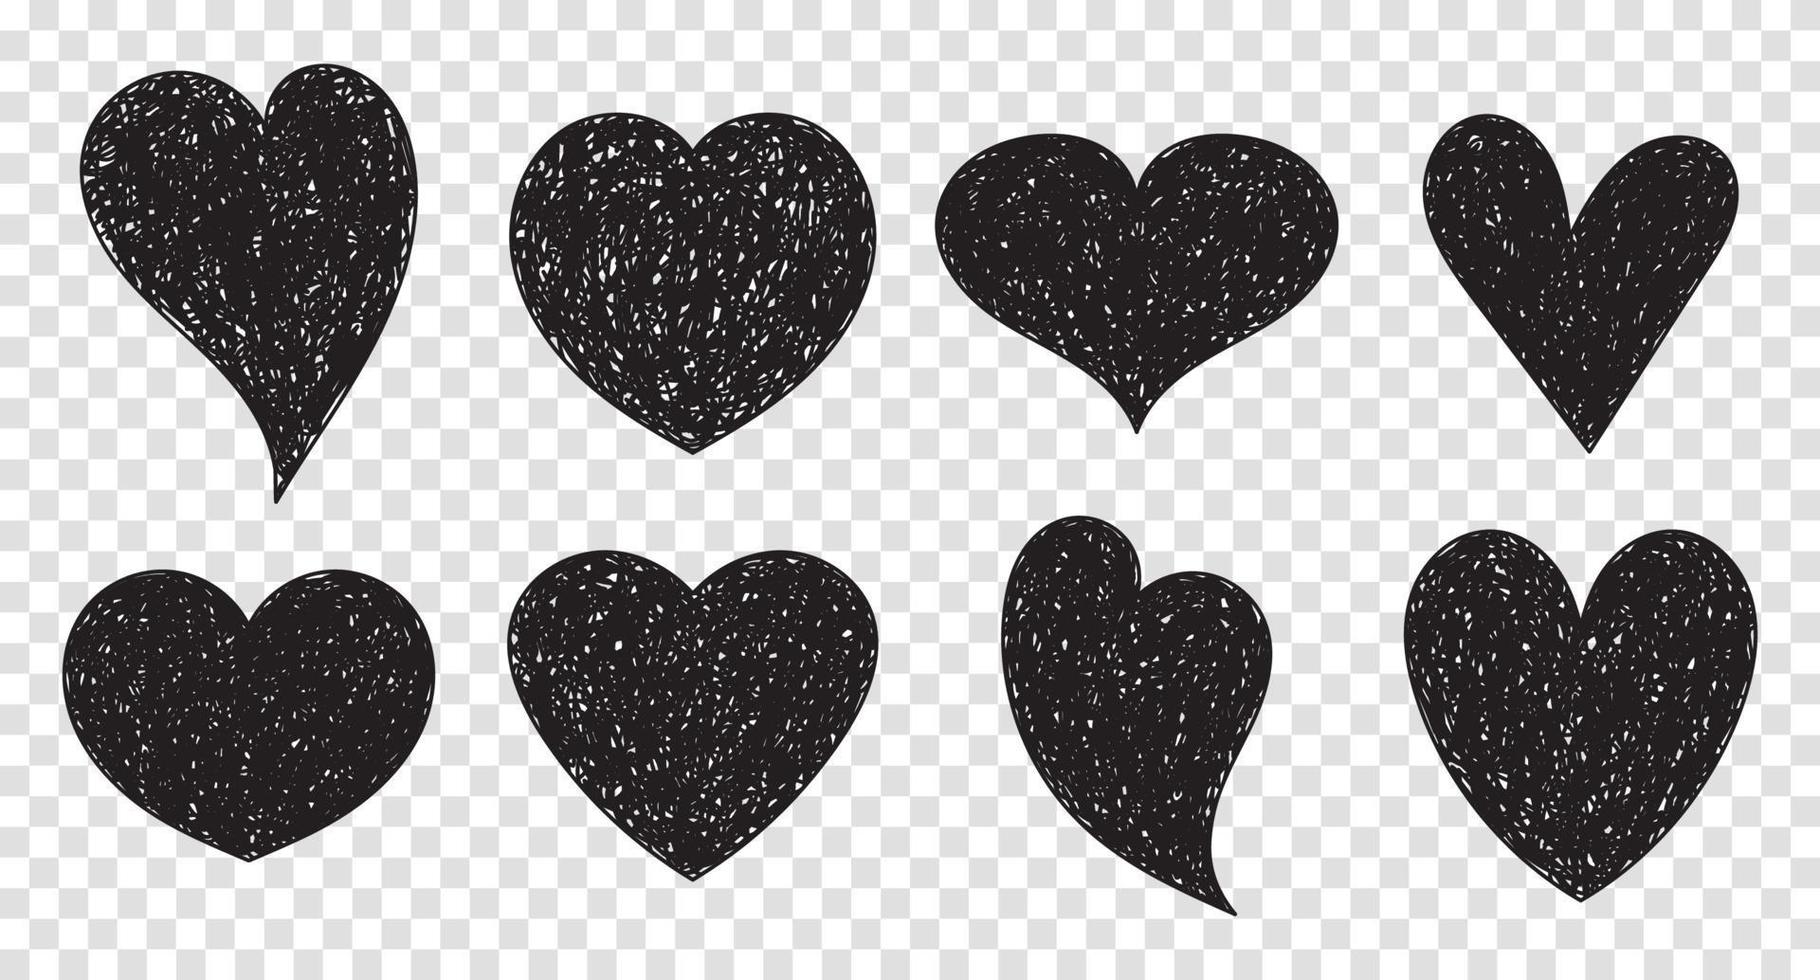 conjunto de símbolos en forma de corazón de garabato. colección de diferentes corazones románticos dibujados a mano para pegatina, etiqueta, logo de amor. ilustración vectorial vector